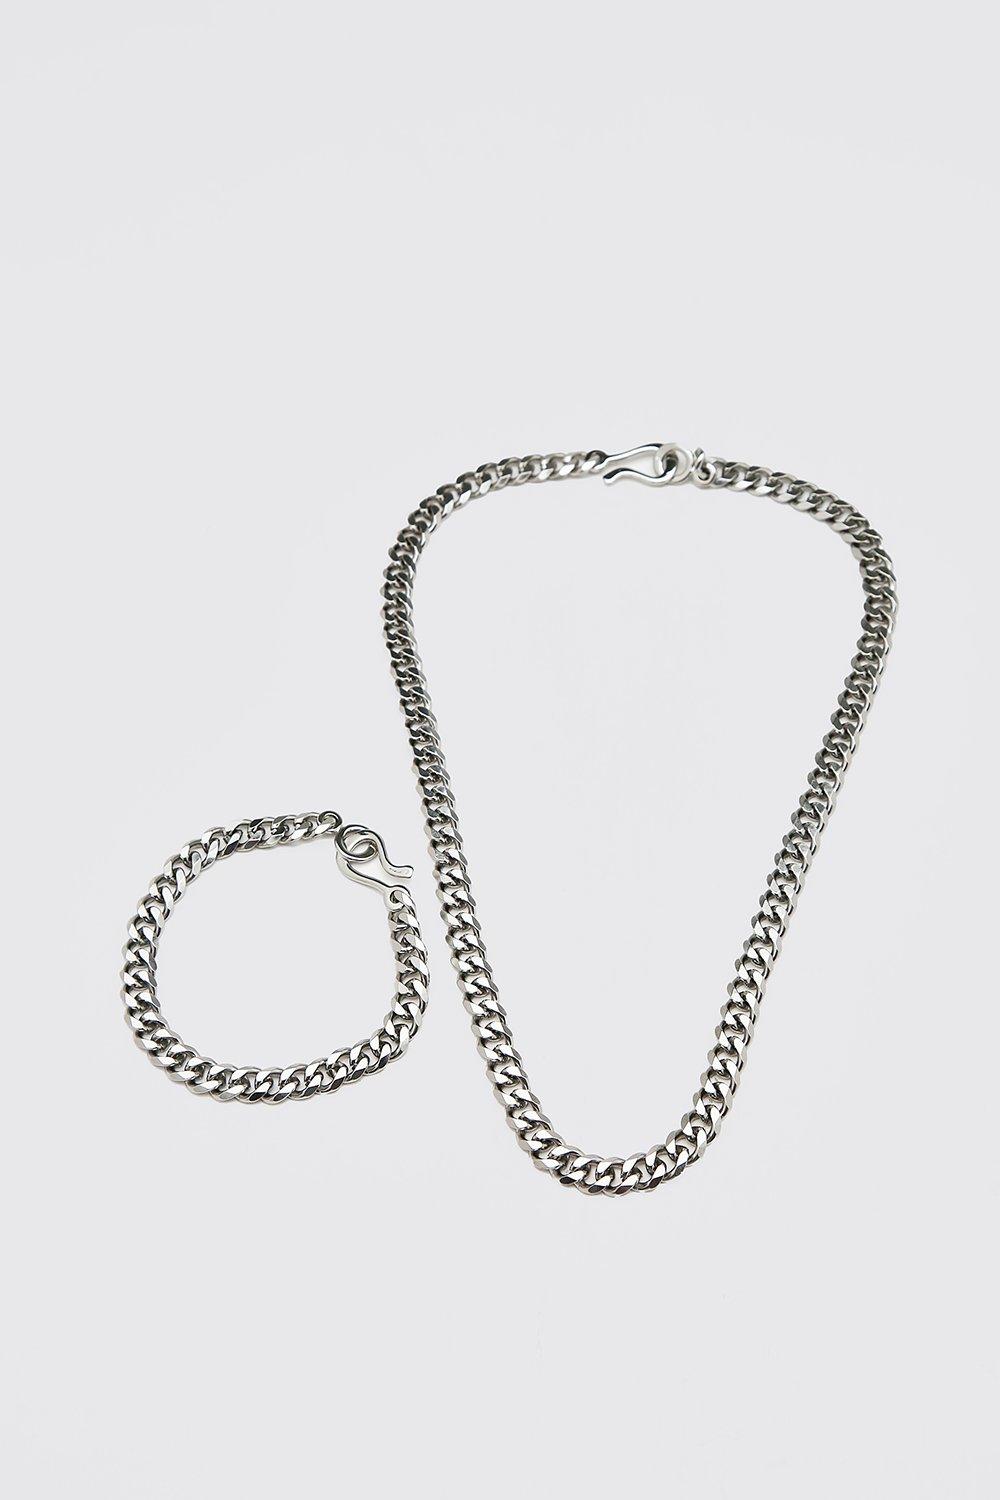 collier et bracelet homme - argent - one size, argent